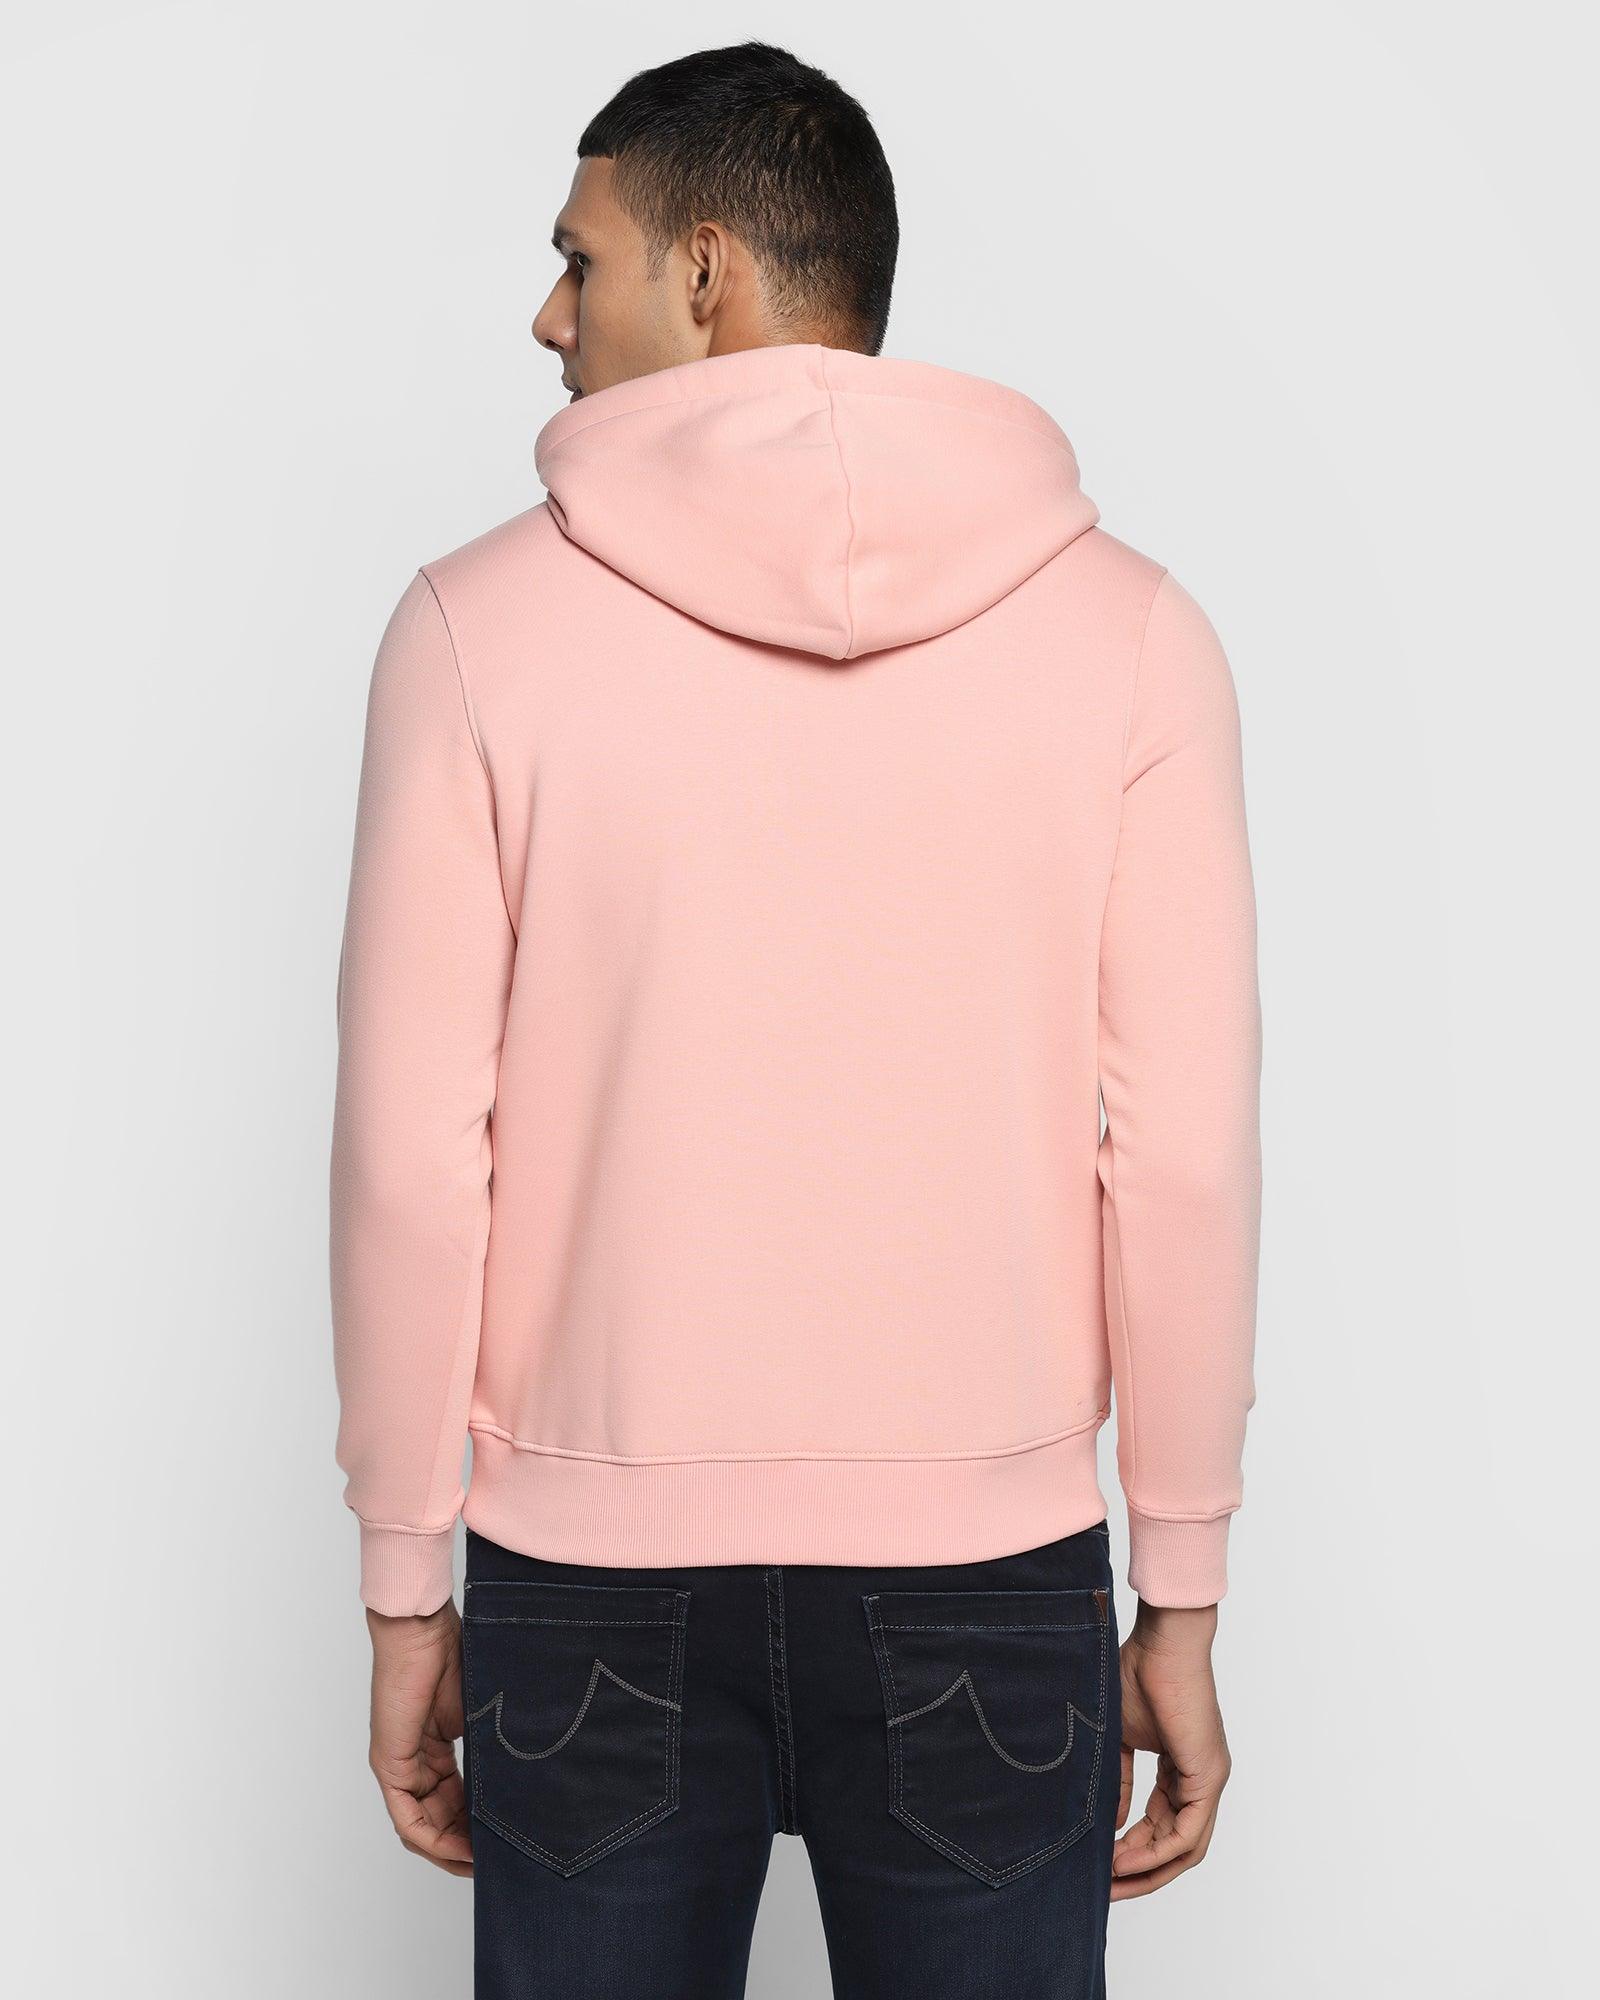 Hoodie Coral Pink Printed Sweatshirt - Solo